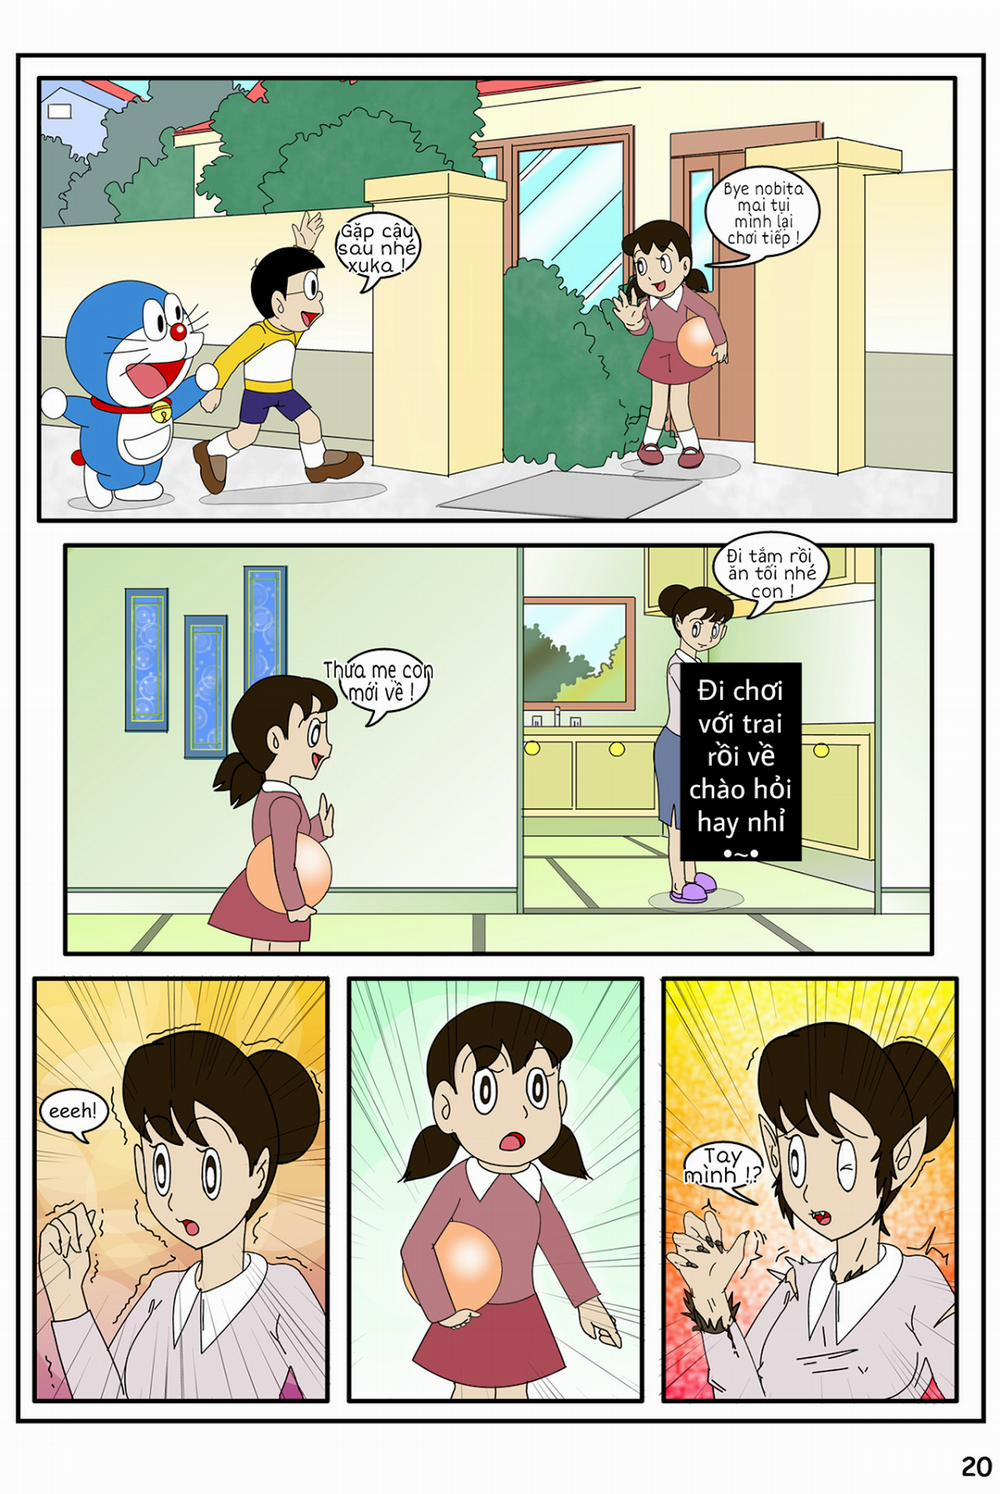 Tuyển Tập Doraemon Doujinshi 18+ Chương 20 Kem ch s i 2 Trang 4